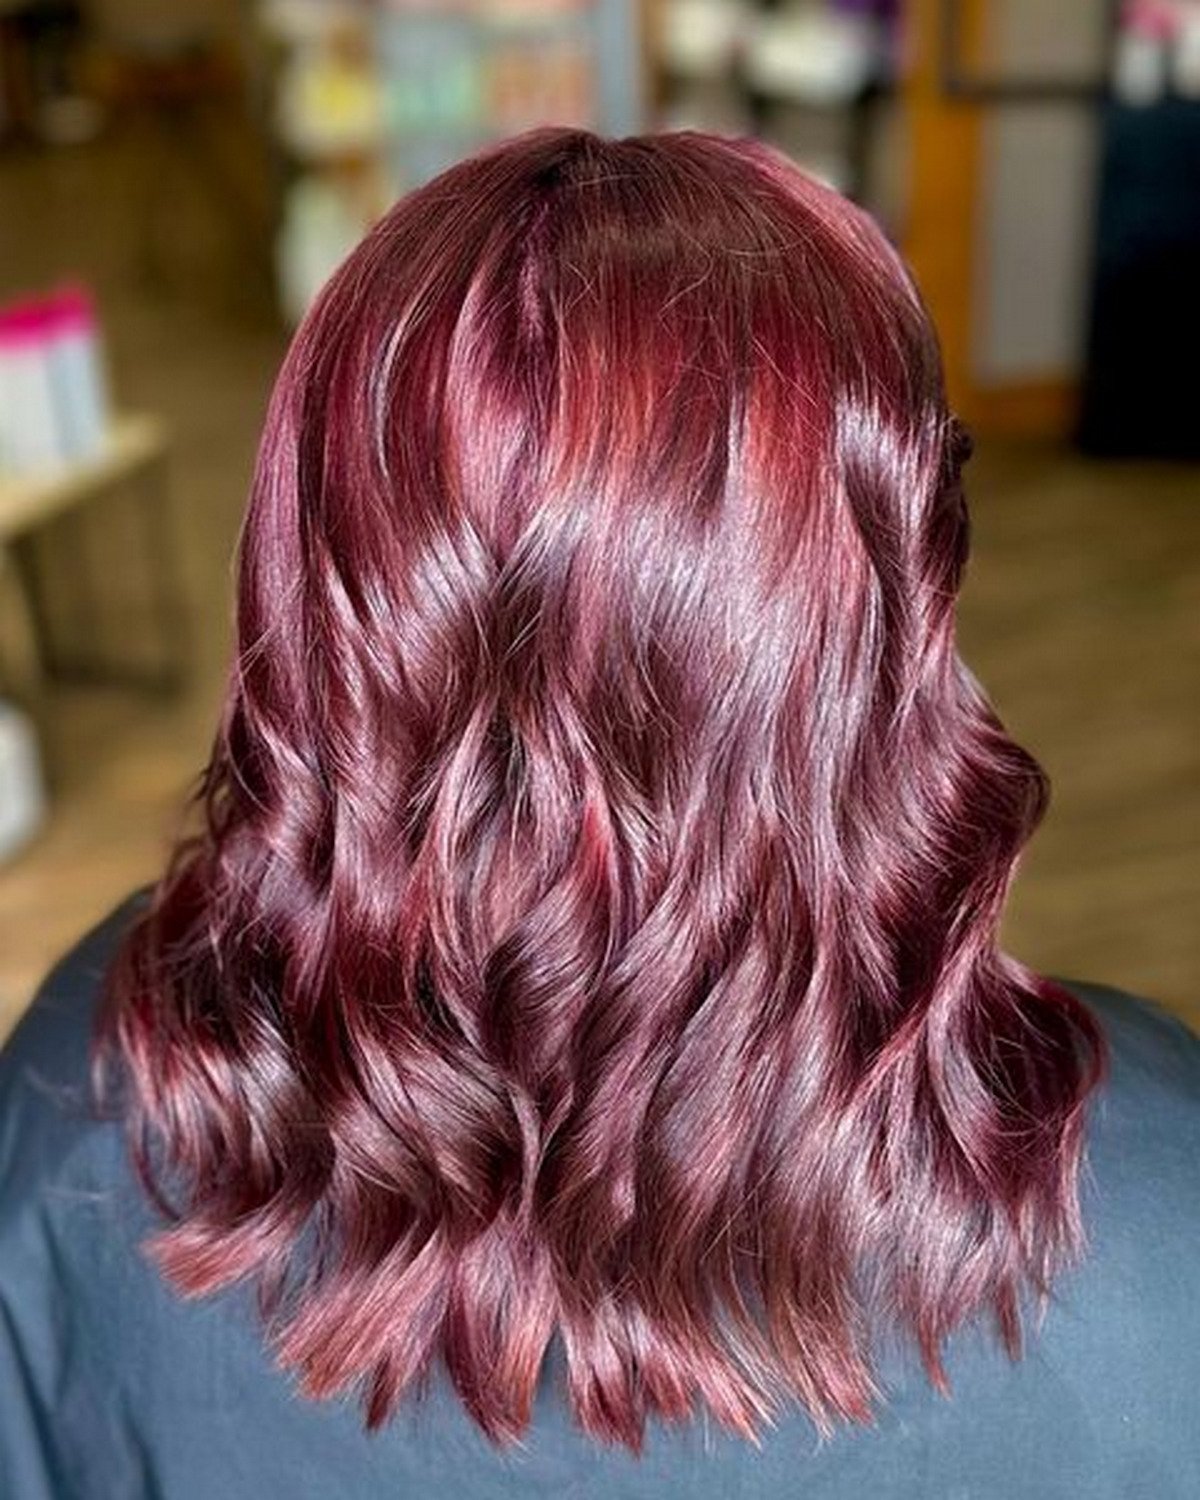 Mahogany Vibrant, Shiny Waves Of Hair